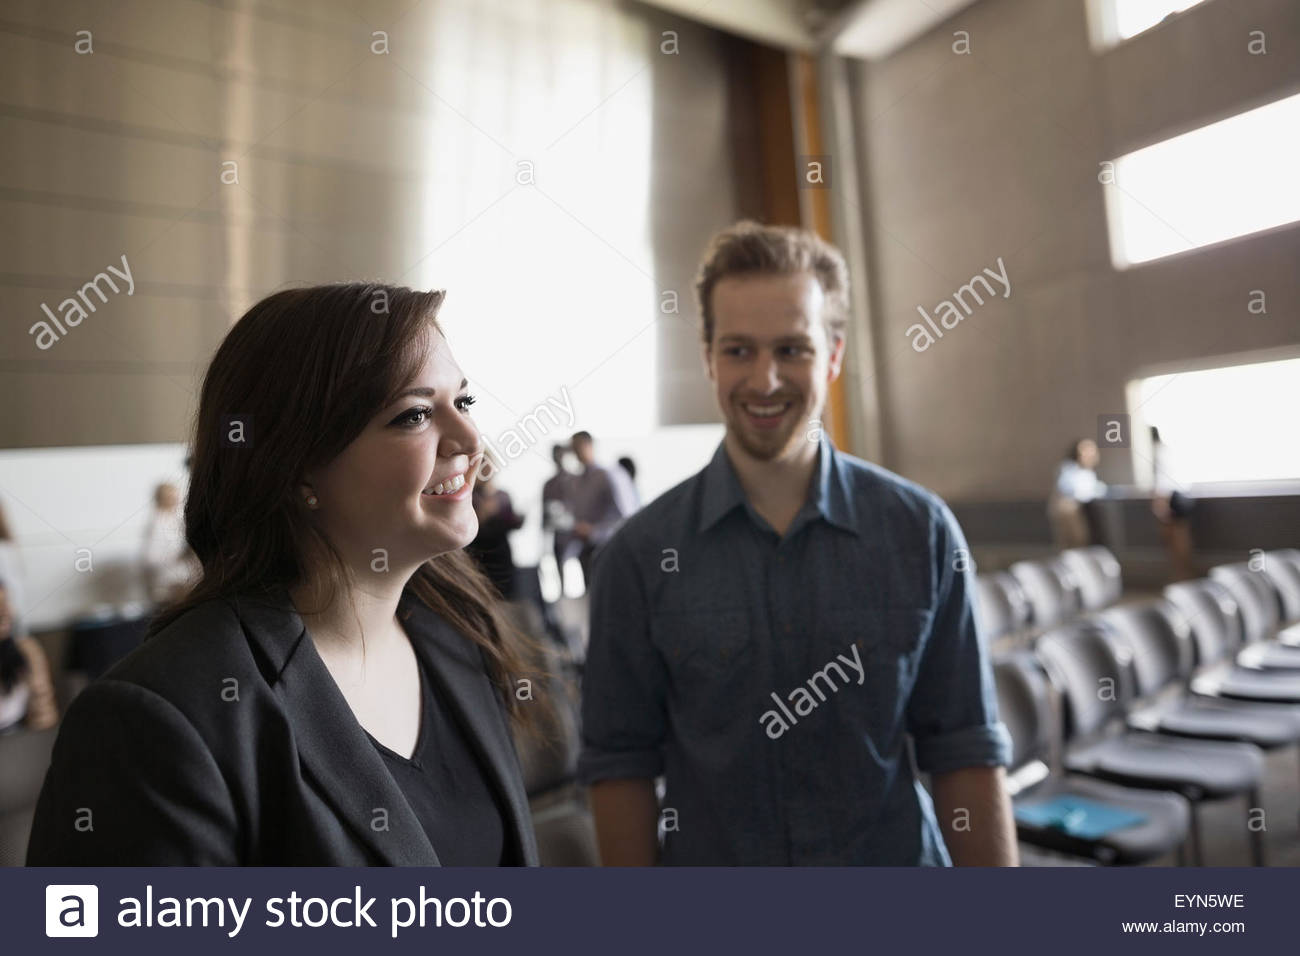 Los estudiantes en el auditorio sonriente Foto de stock